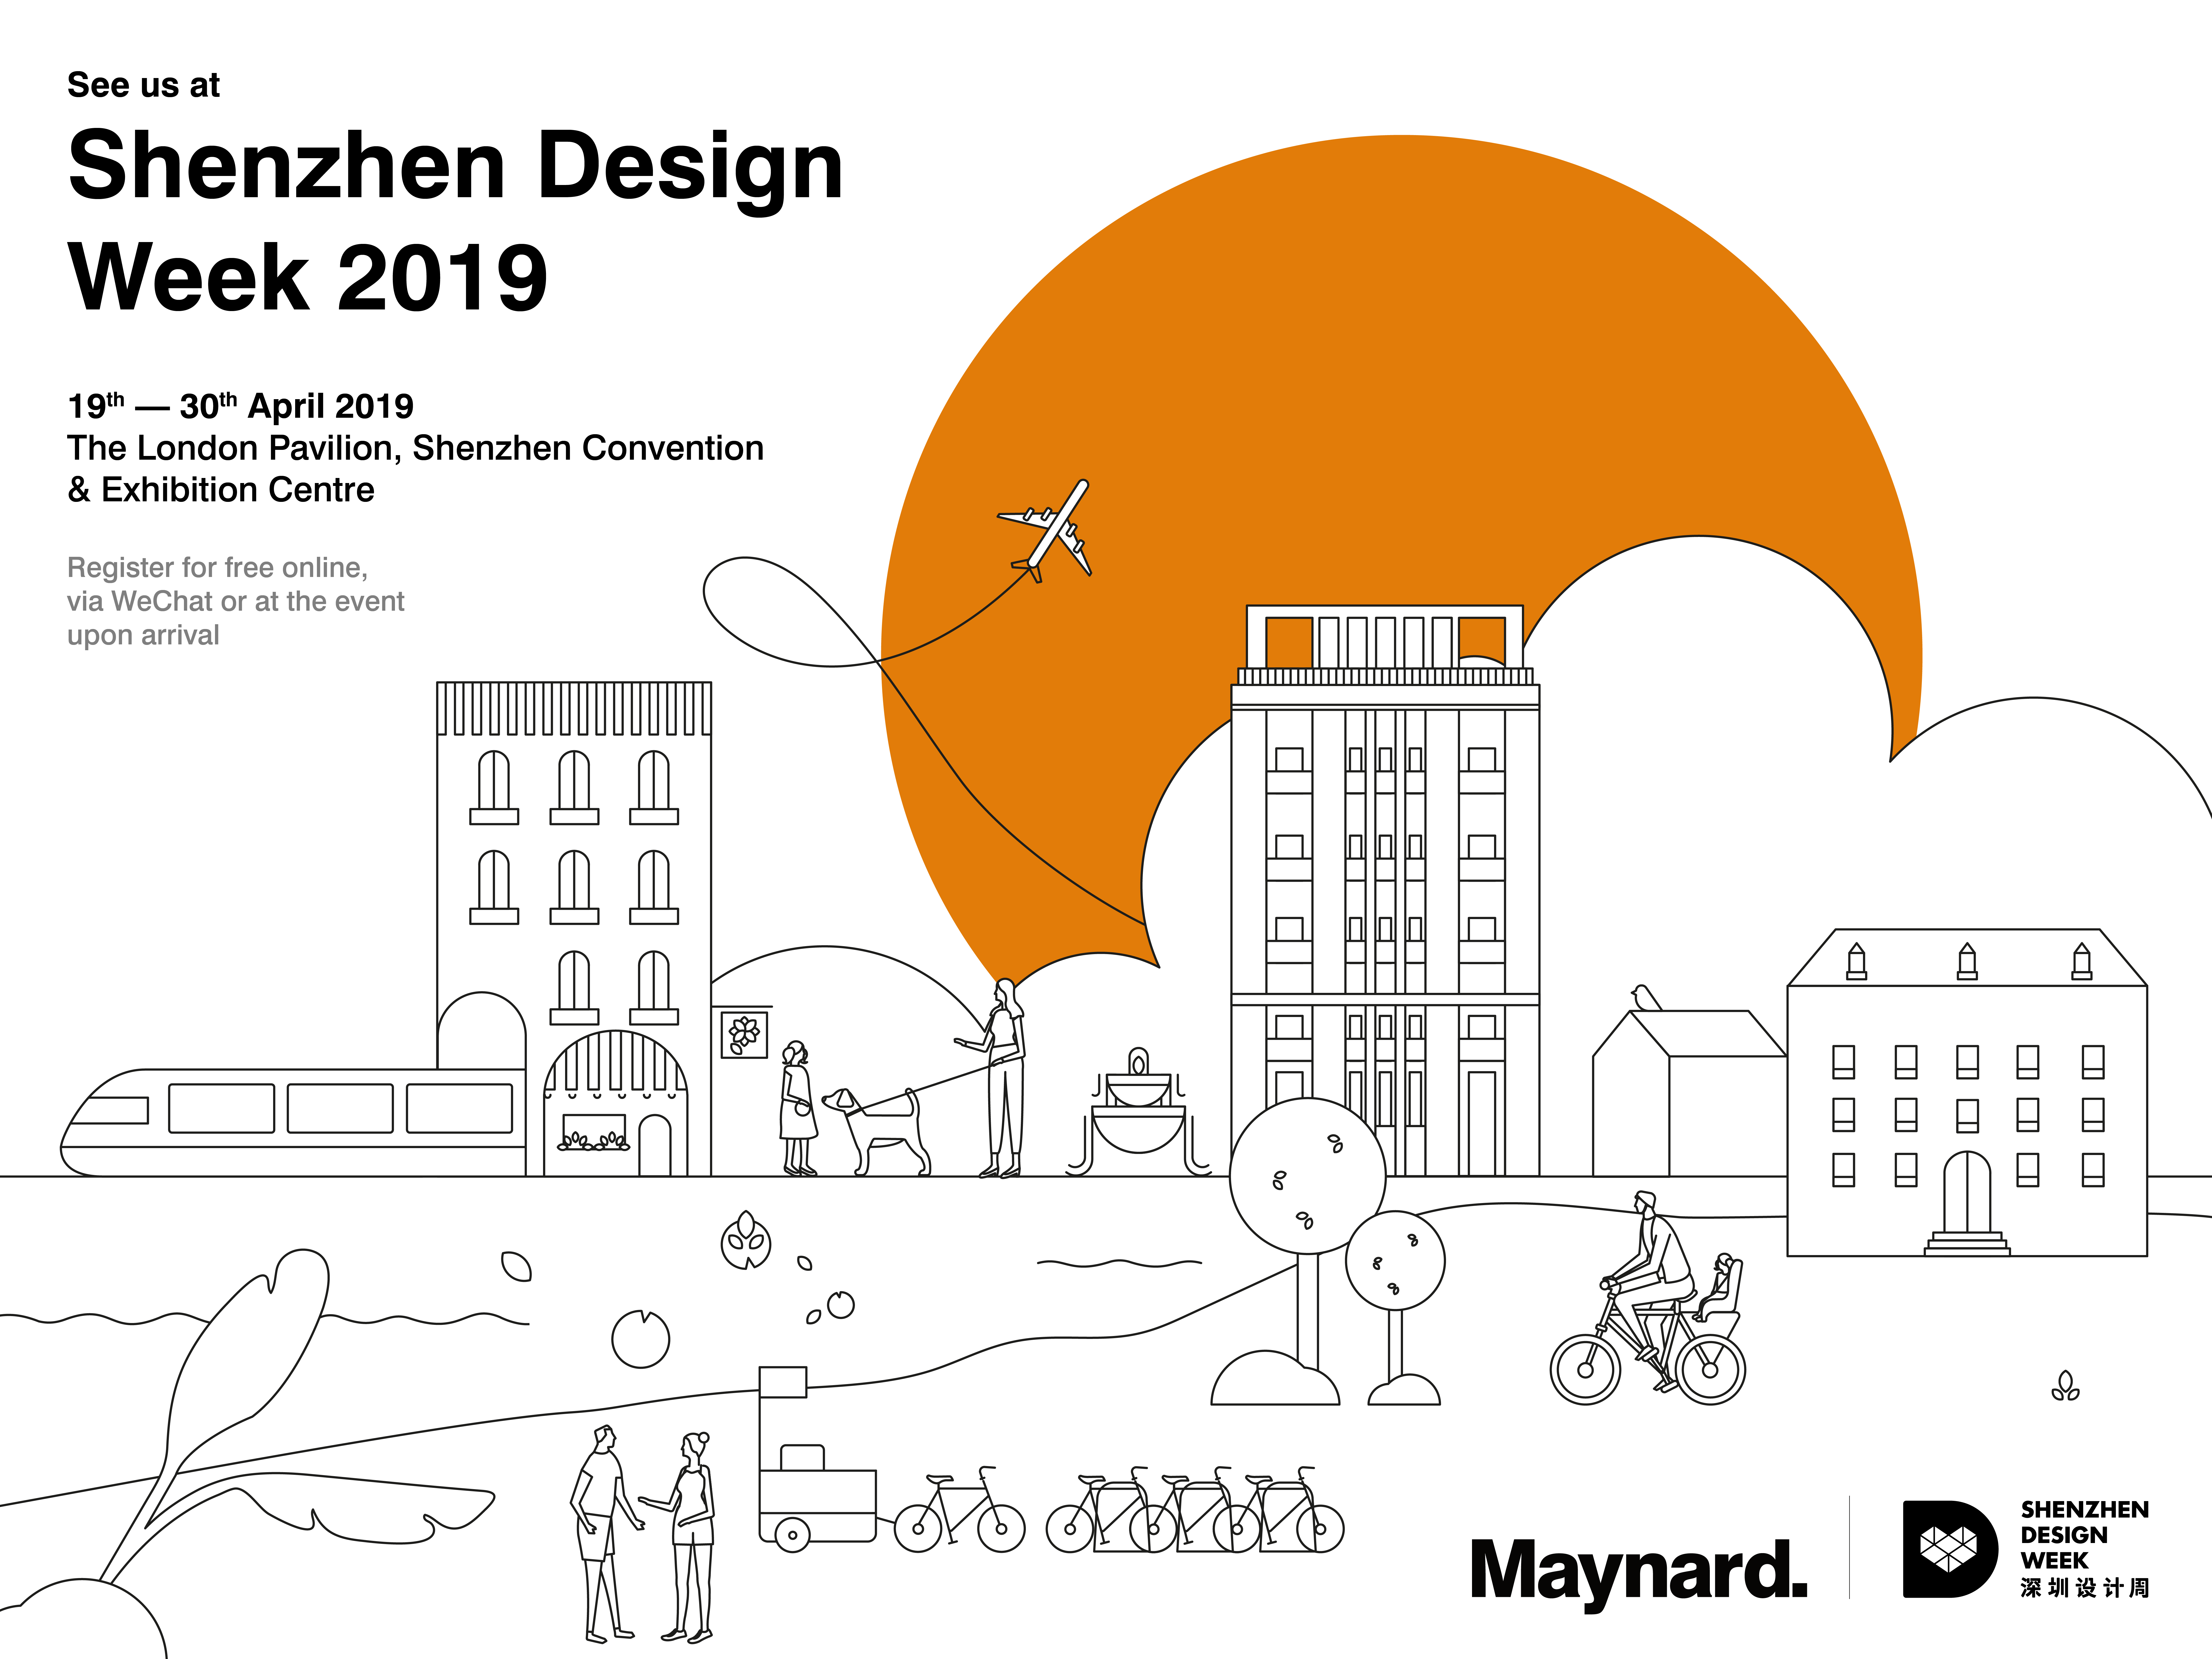 Shenzhen Design Week 2019